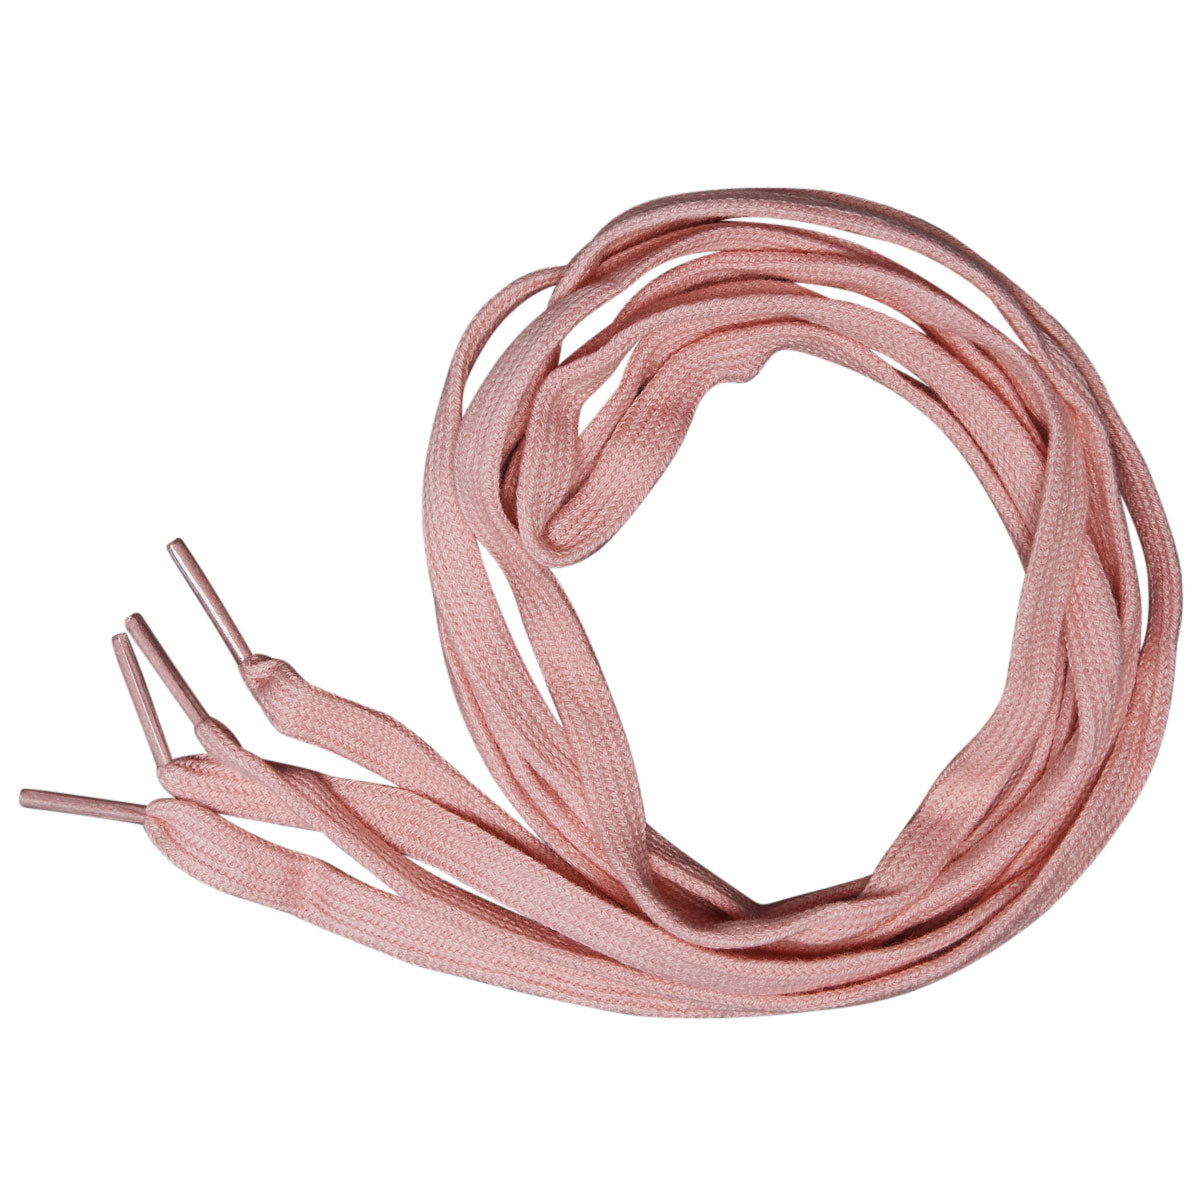 CCS Flat Lace Shoelaces - Light Pink - 54